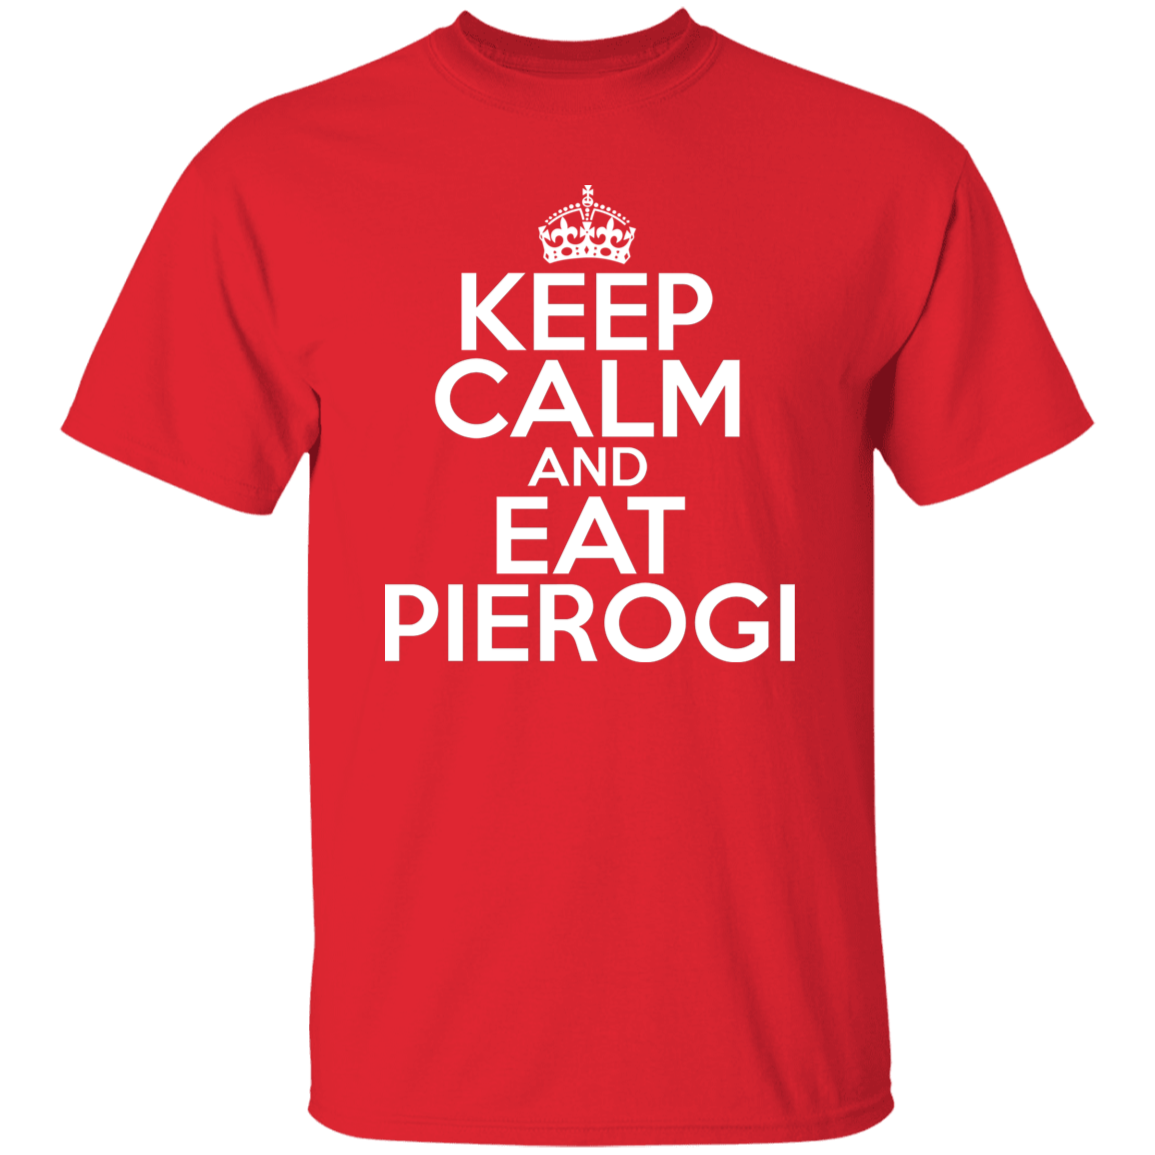 Keep Calm And Eat Pierogi Apparel CustomCat G500 5.3 oz. T-Shirt Red S